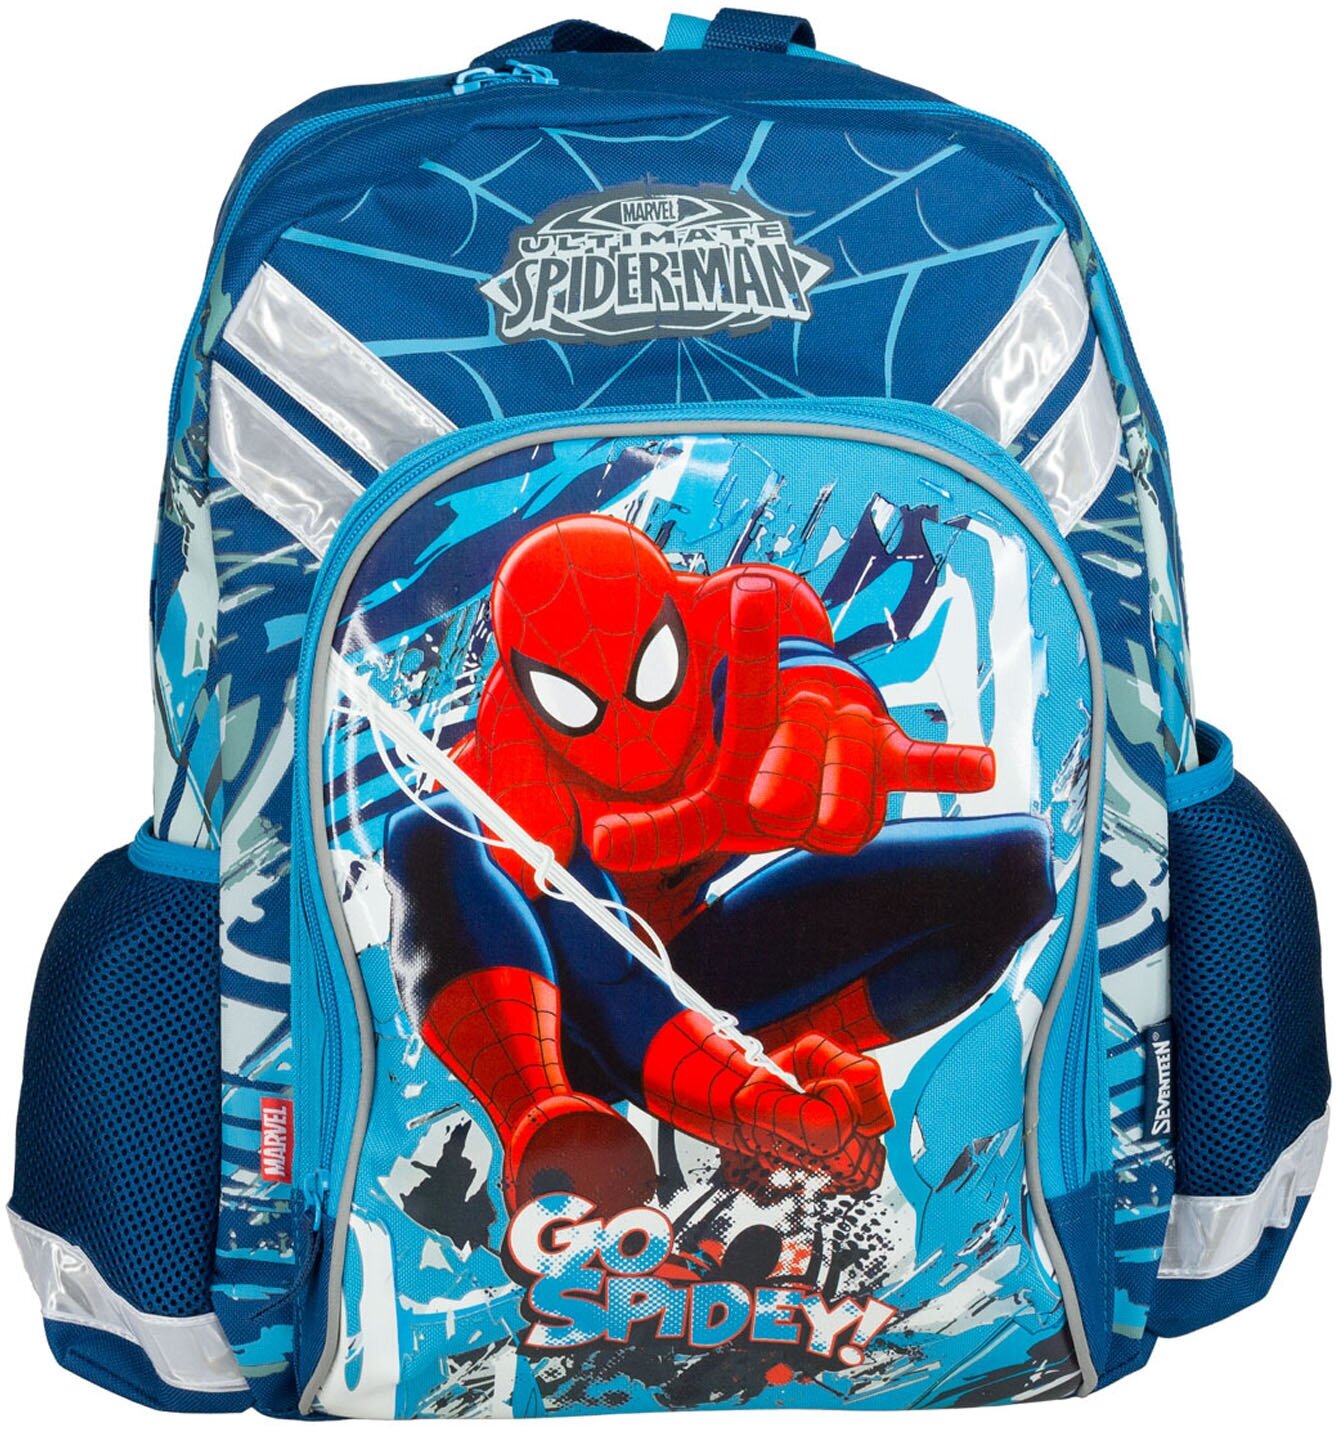 Рюкзак Spider-man Classic,SMCB-MT1-988M, для мальчиков